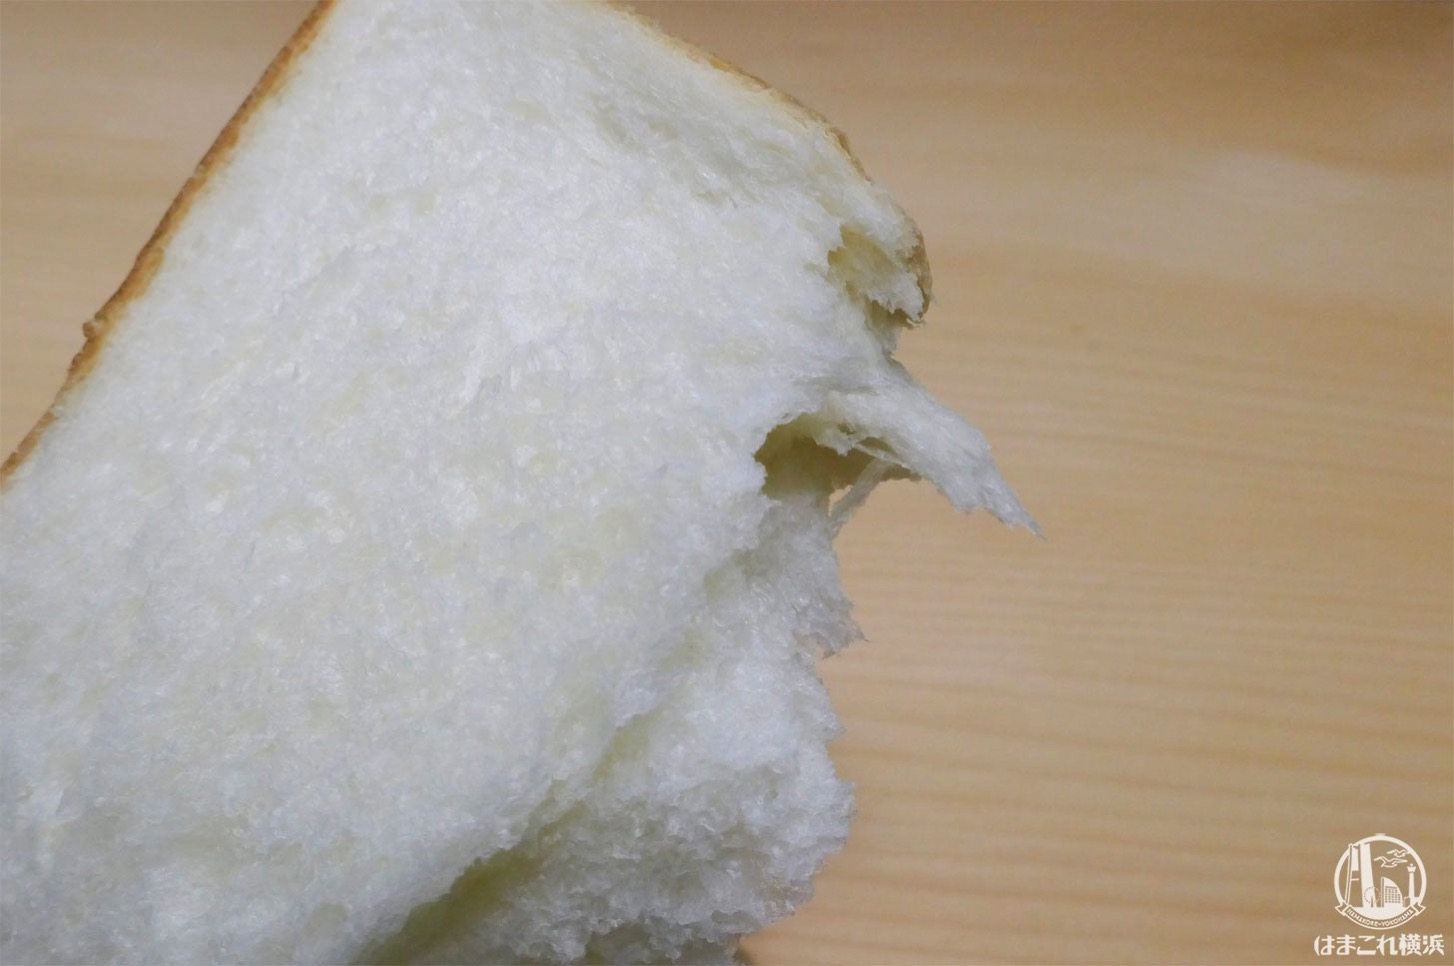 高級「生」食パン